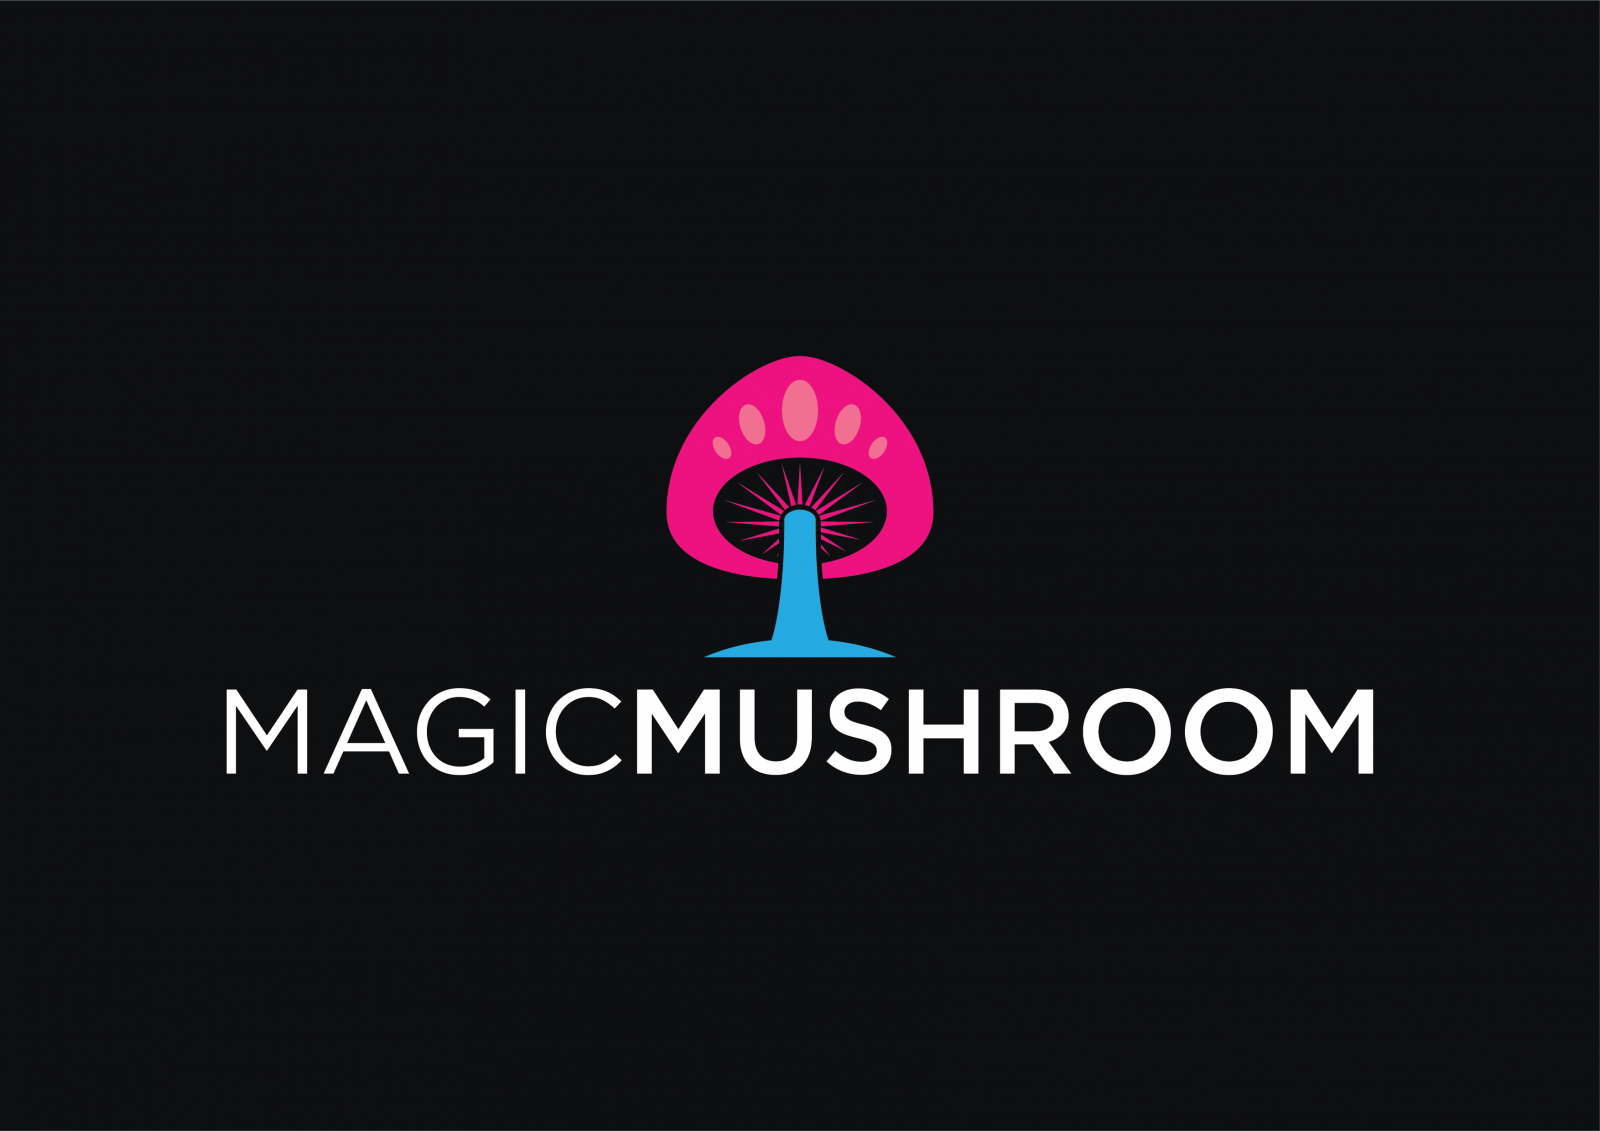 magicmushroom.ca